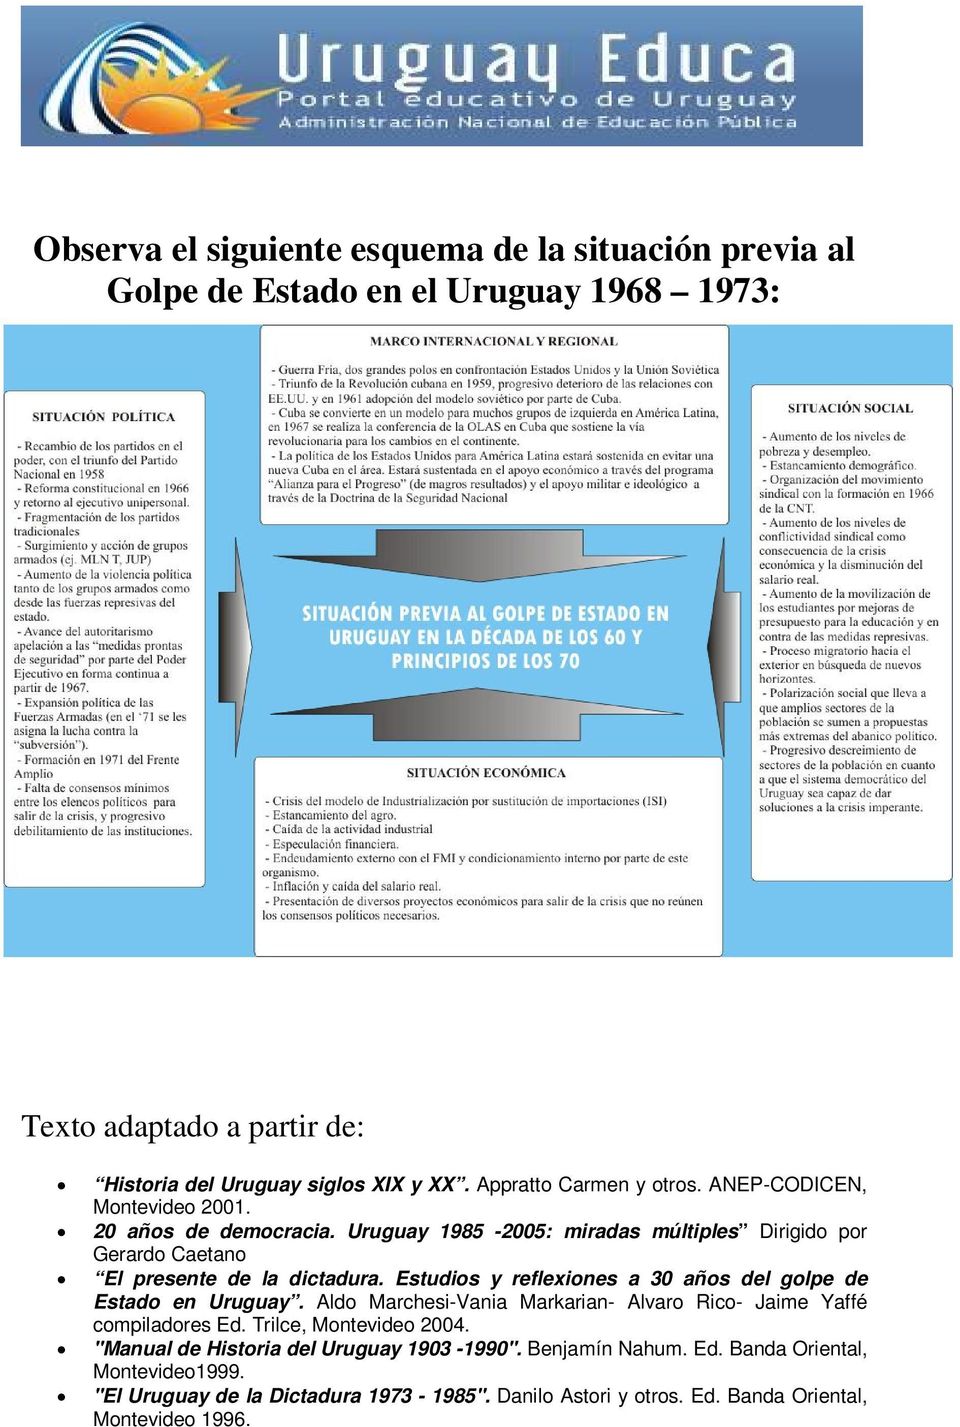 Estudios y reflexiones a 30 años del golpe de Estado en Uruguay. Aldo Marchesi-Vania Markarian- Alvaro Rico- Jaime Yaffé compiladores Ed. Trilce, Montevideo 2004.